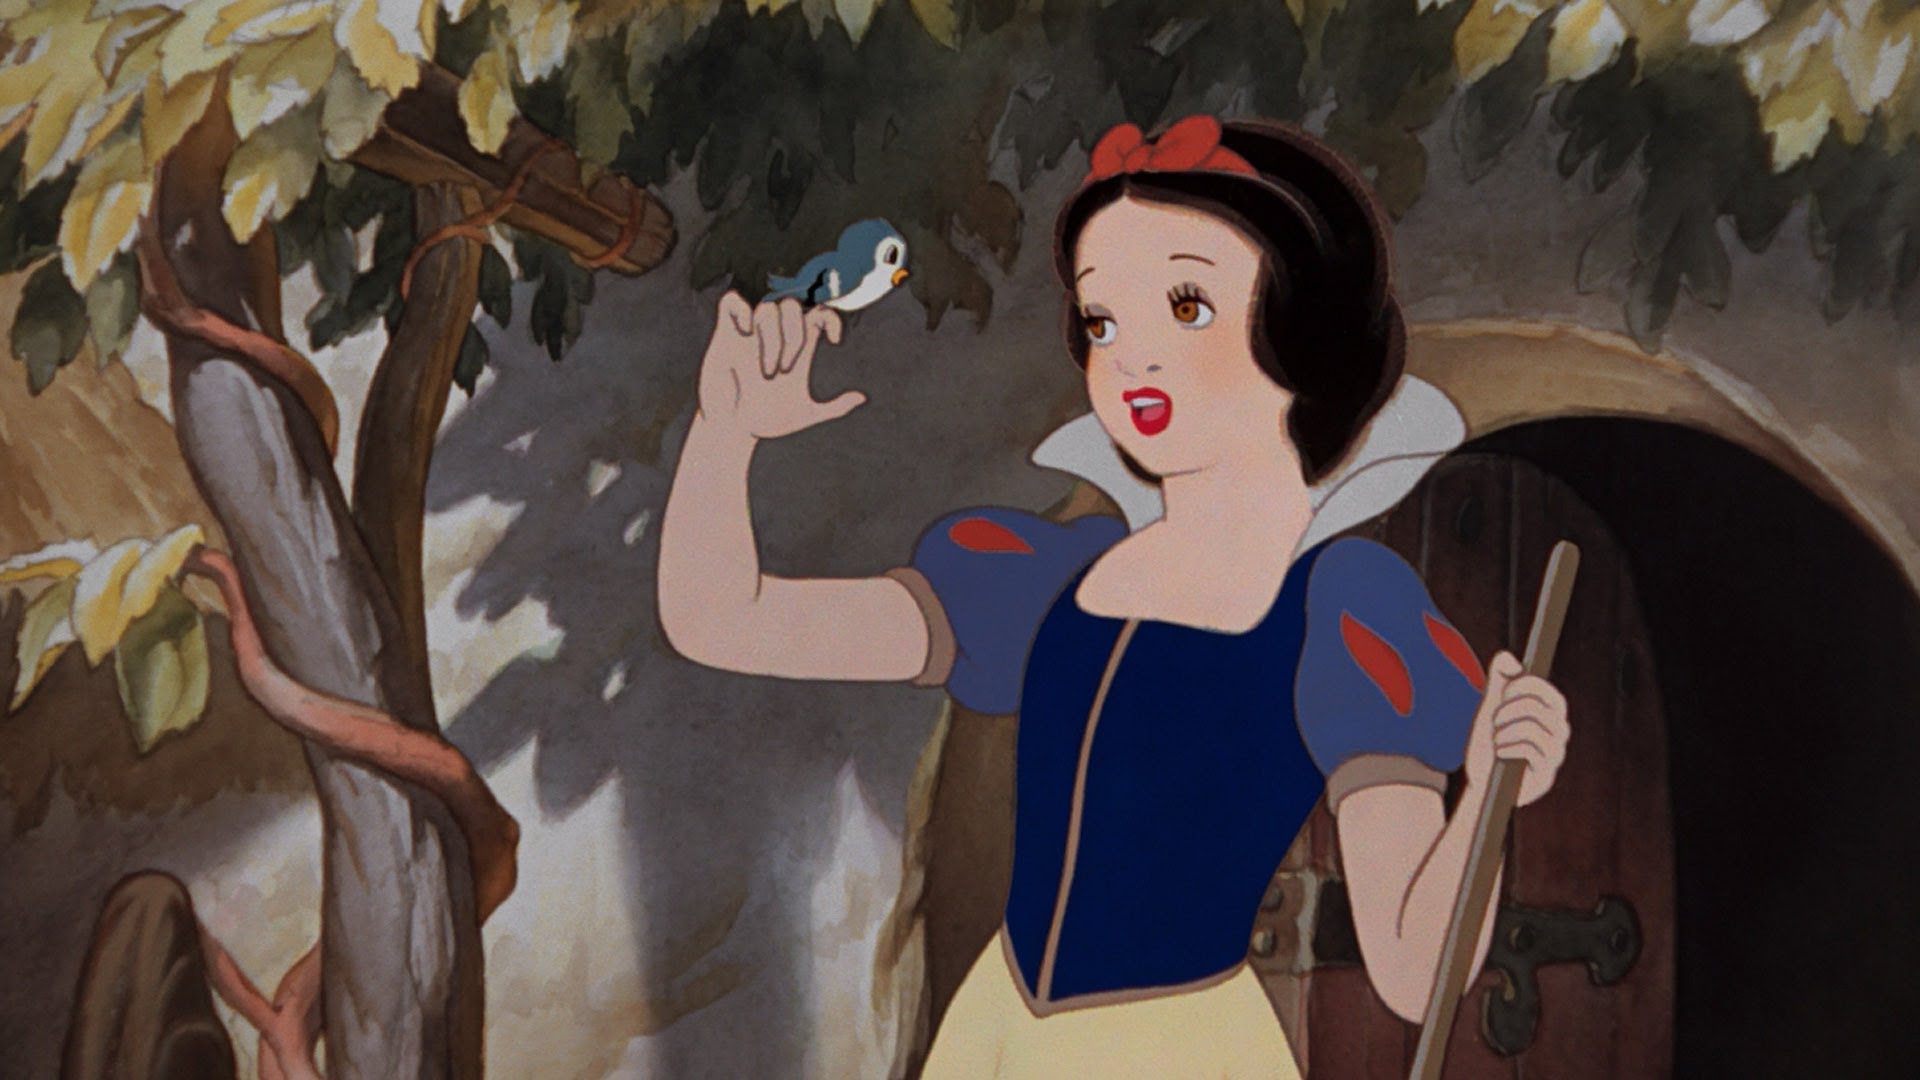 在中国,许多人对泡泡袖的认识都来自于迪士尼公主系列电影和英国